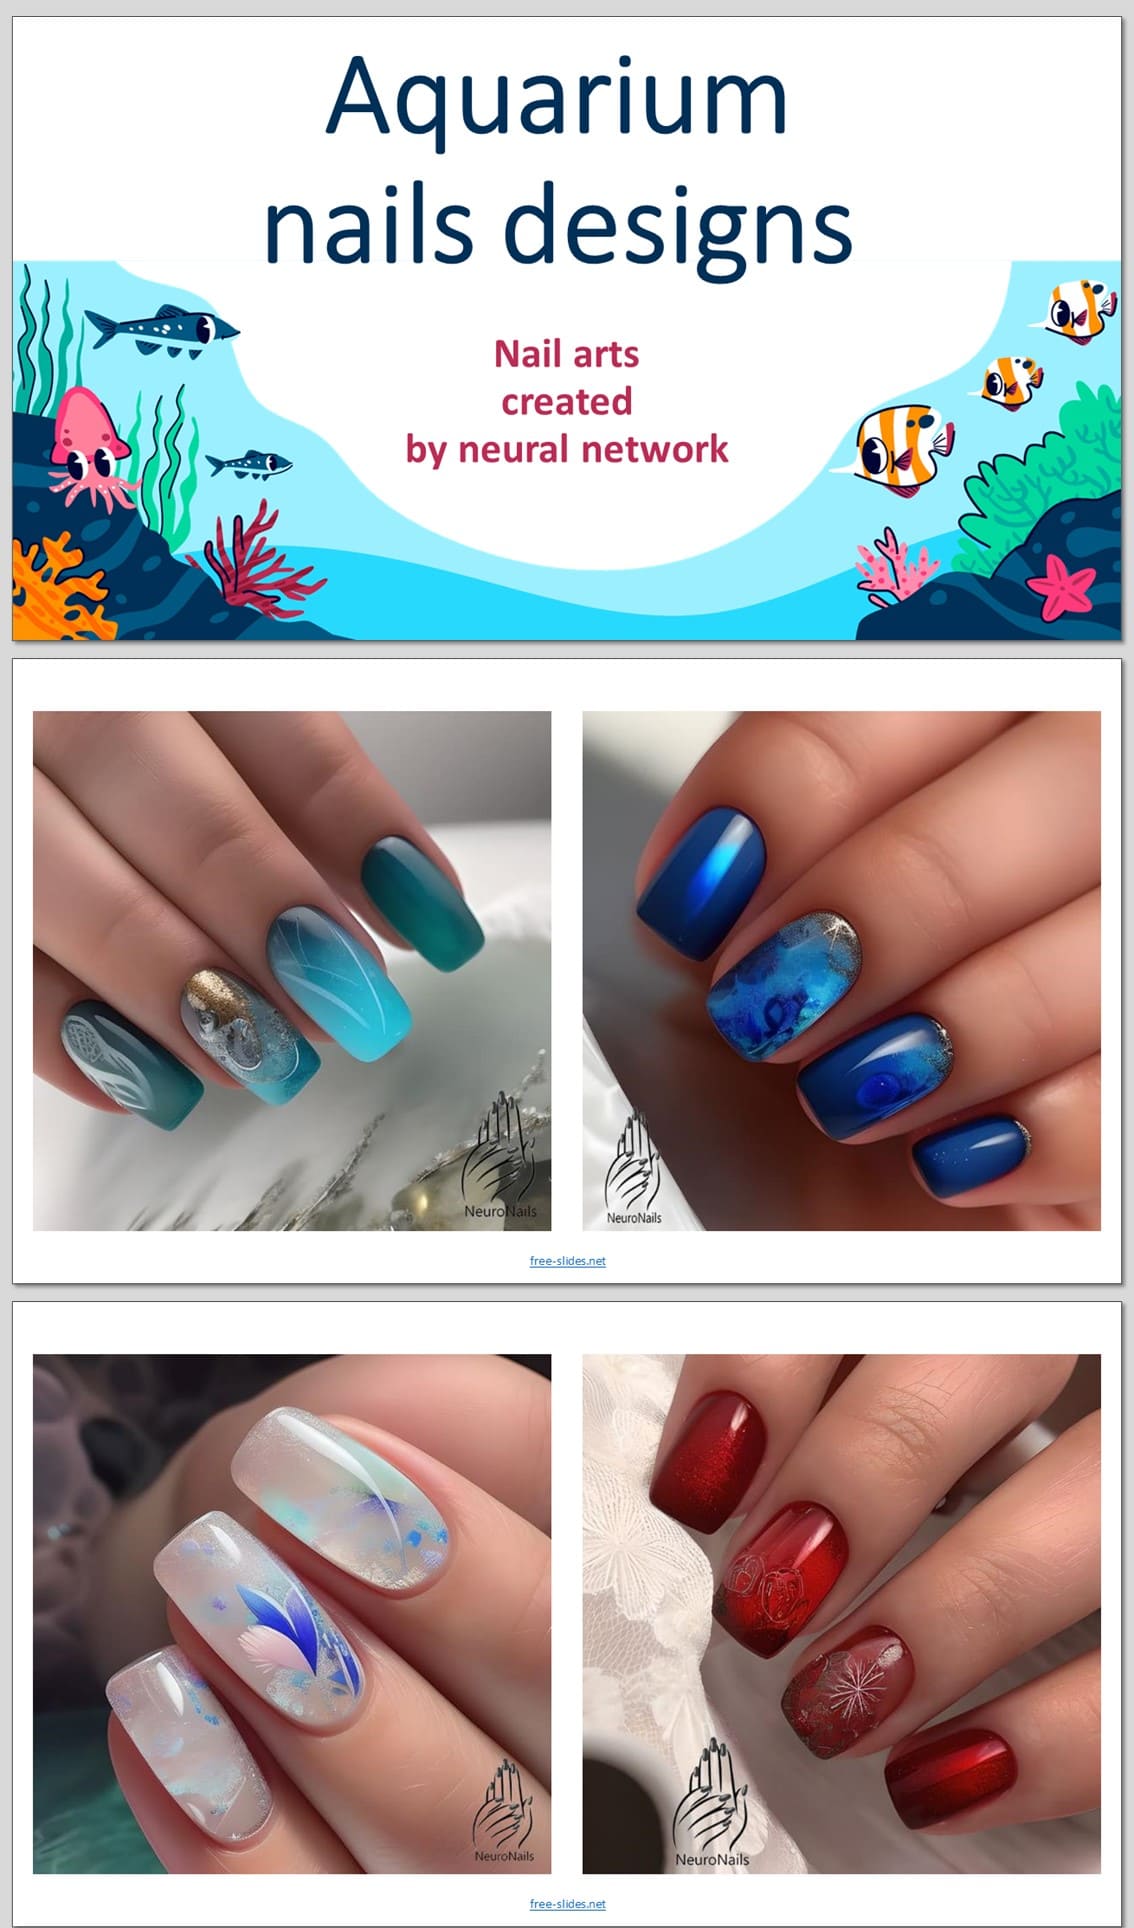 Neural network creates akvarium nails designs